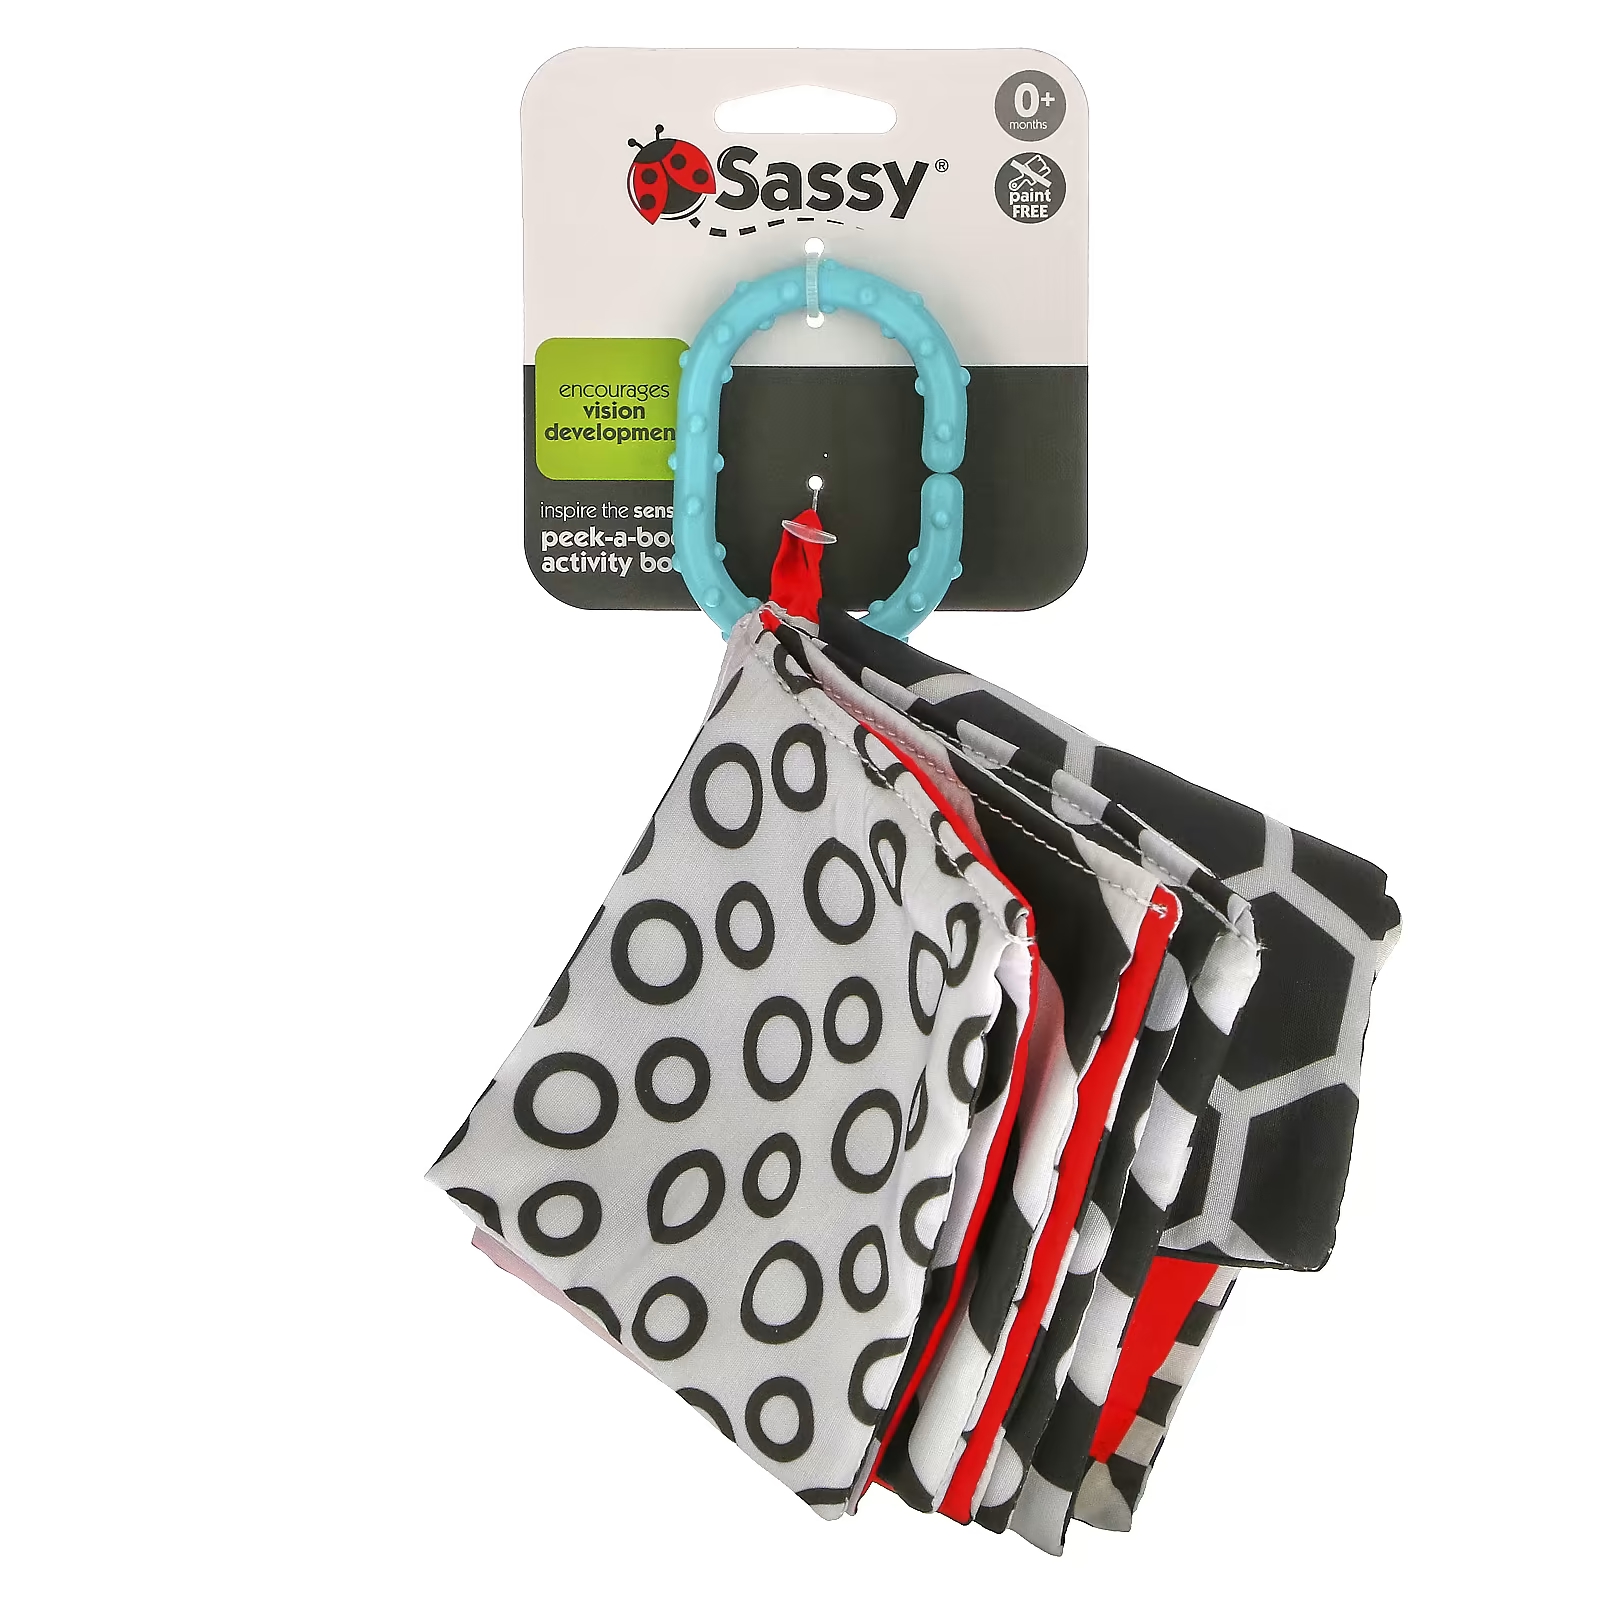 Развивающая тетрадь Sassy Inspire The Senses Peek-A-Boo для детей от 0 месяцев, 1 шт. фотографии